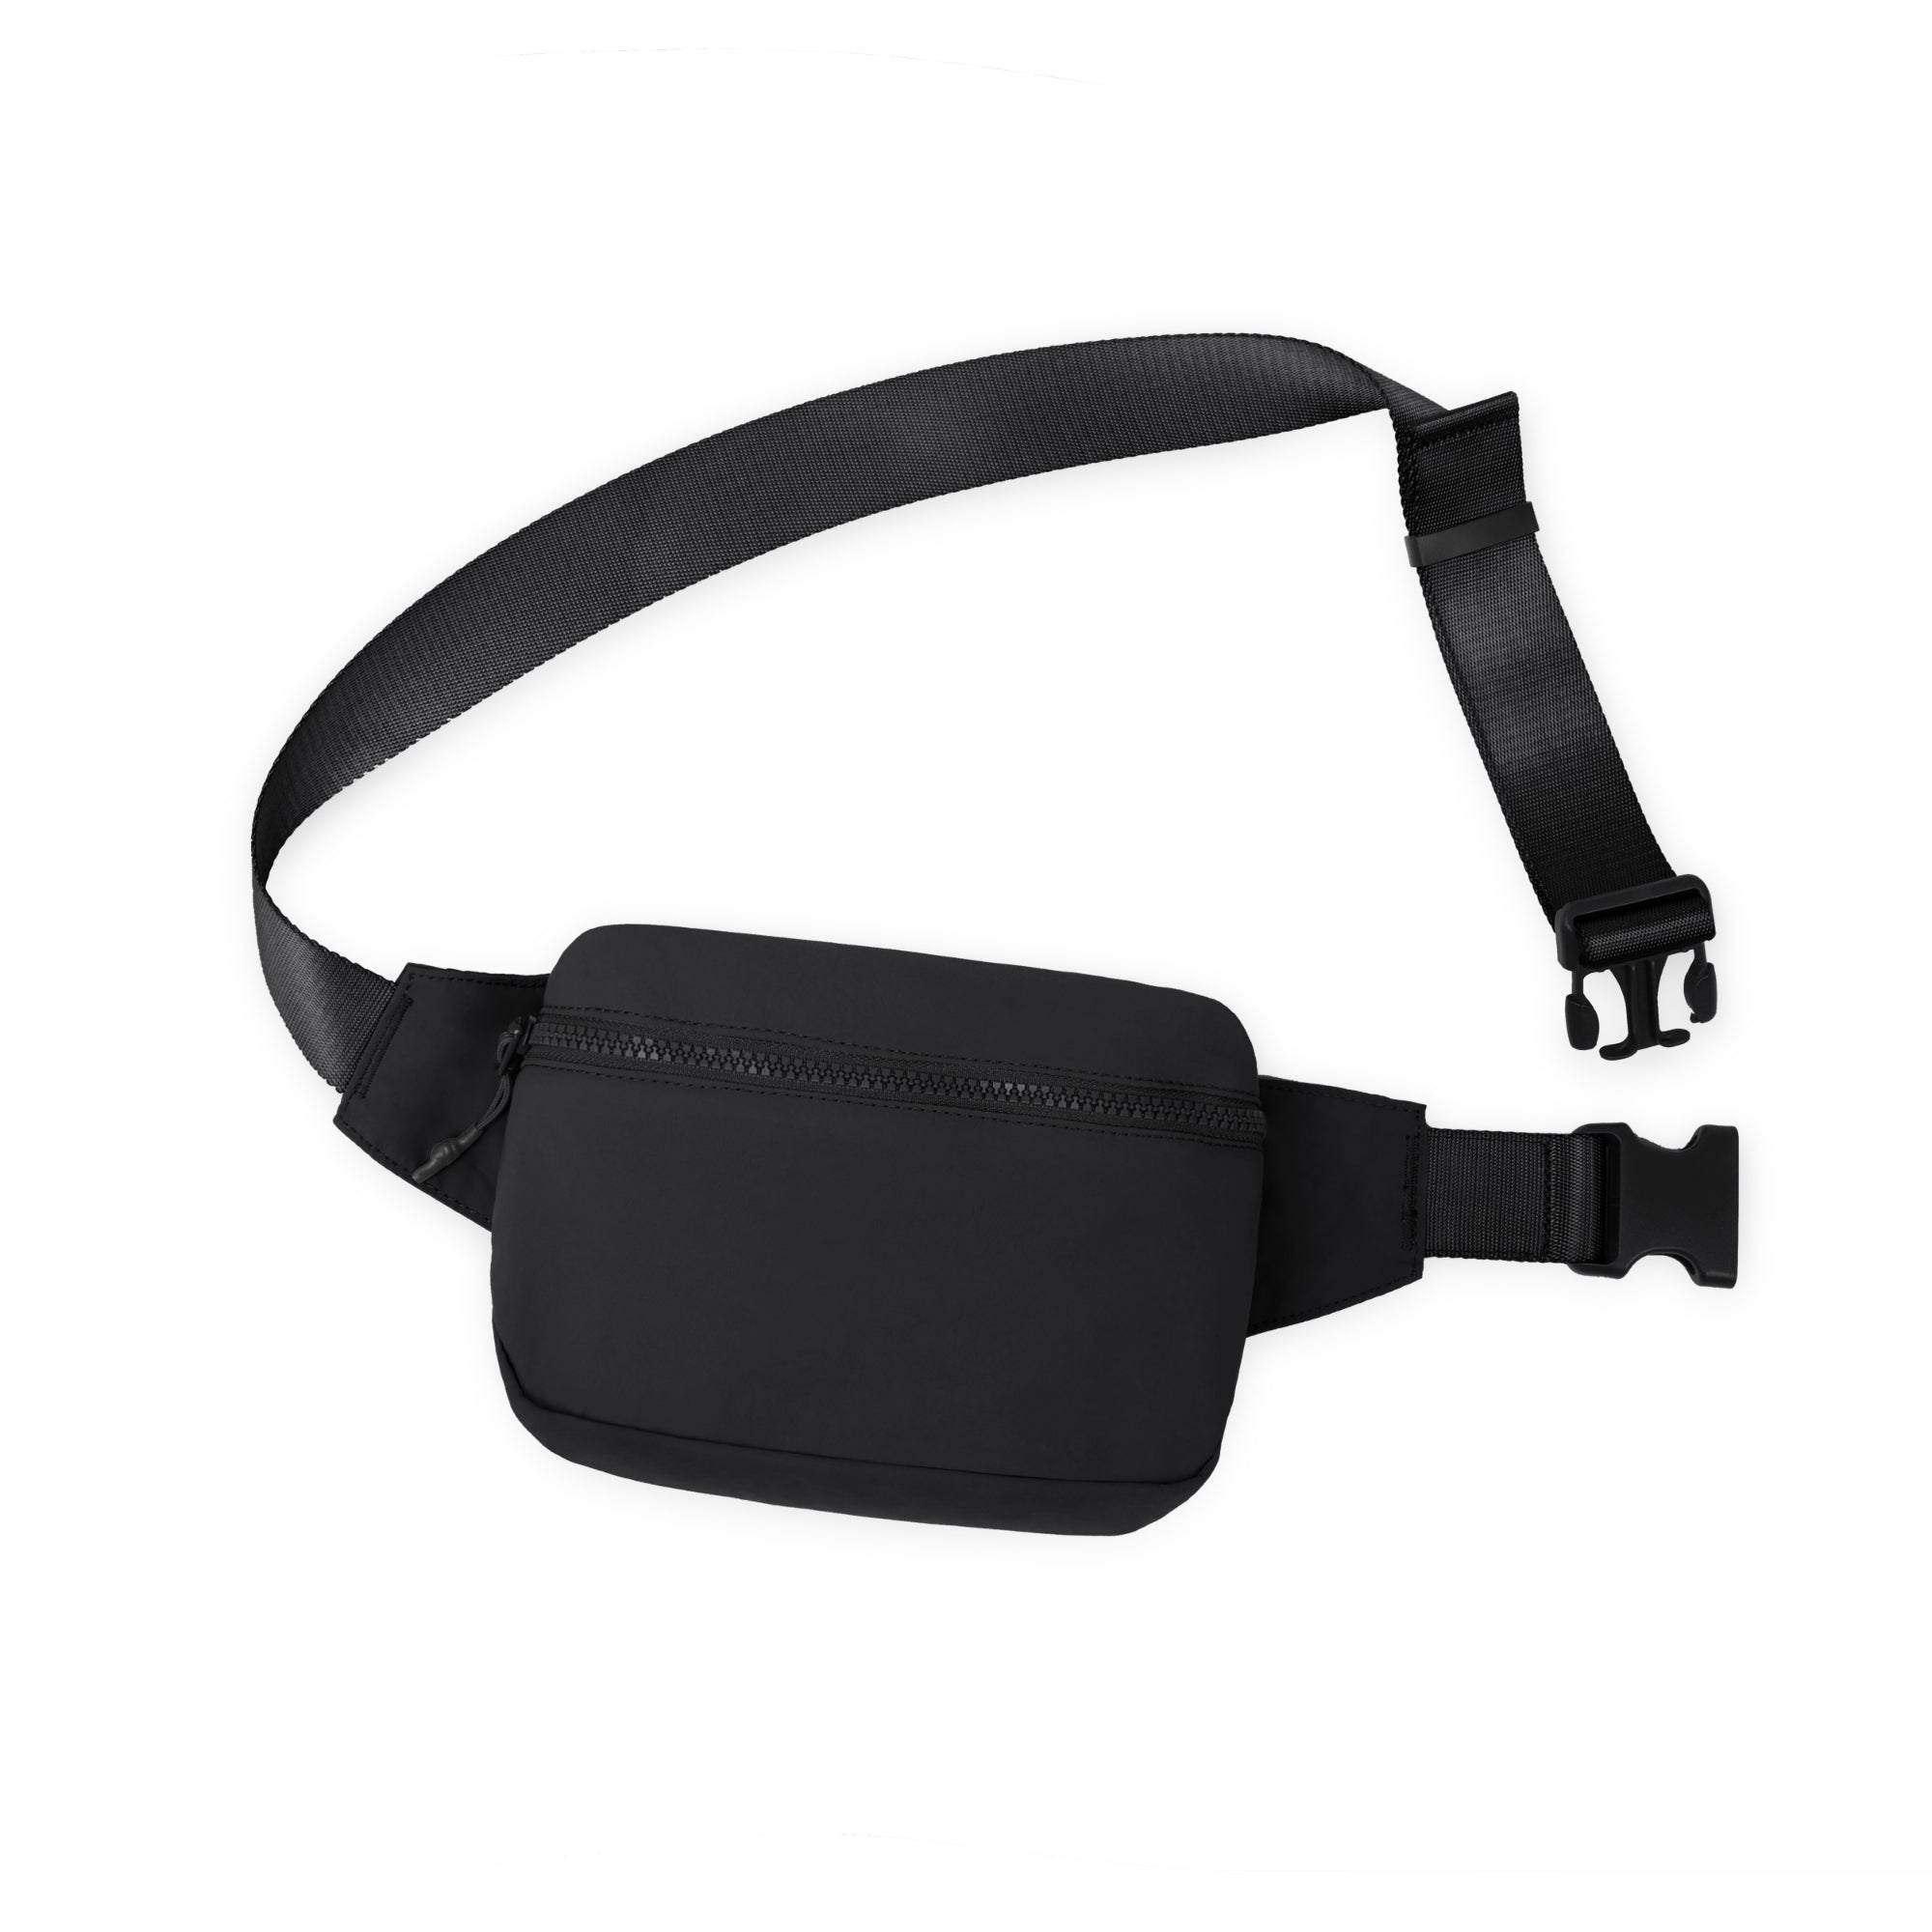 2L Belt Bag with Adjustable Strap Black 8.5" x 5" x 2" - ododos